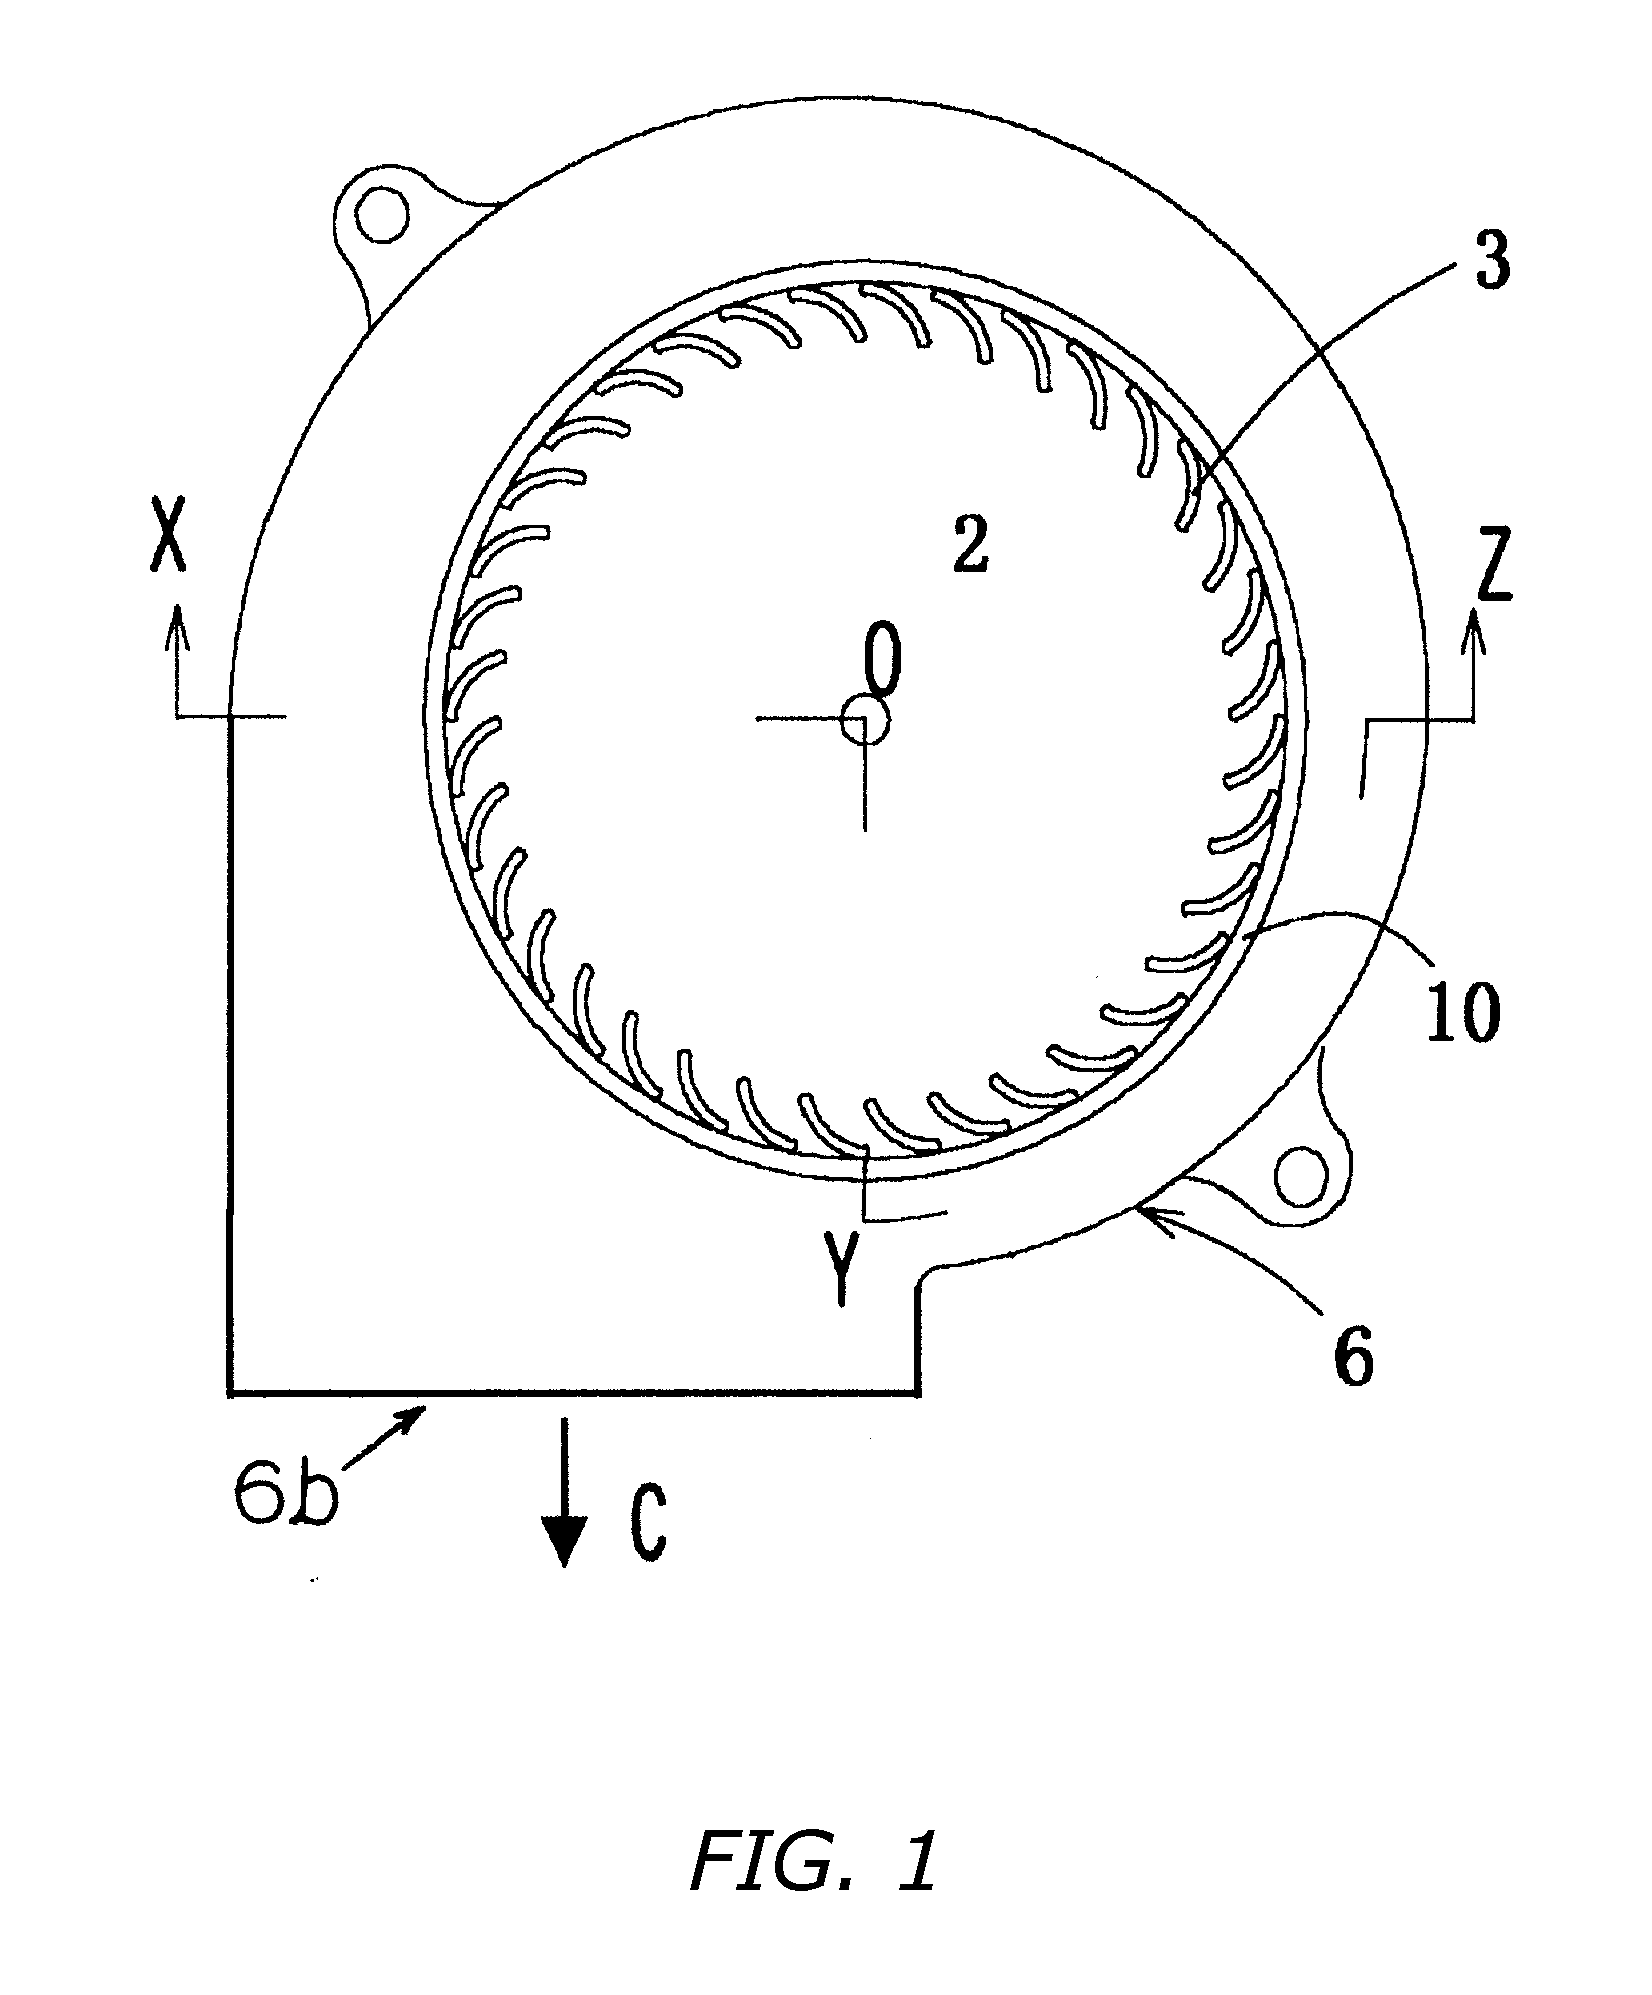 Fan impeller and fan motor